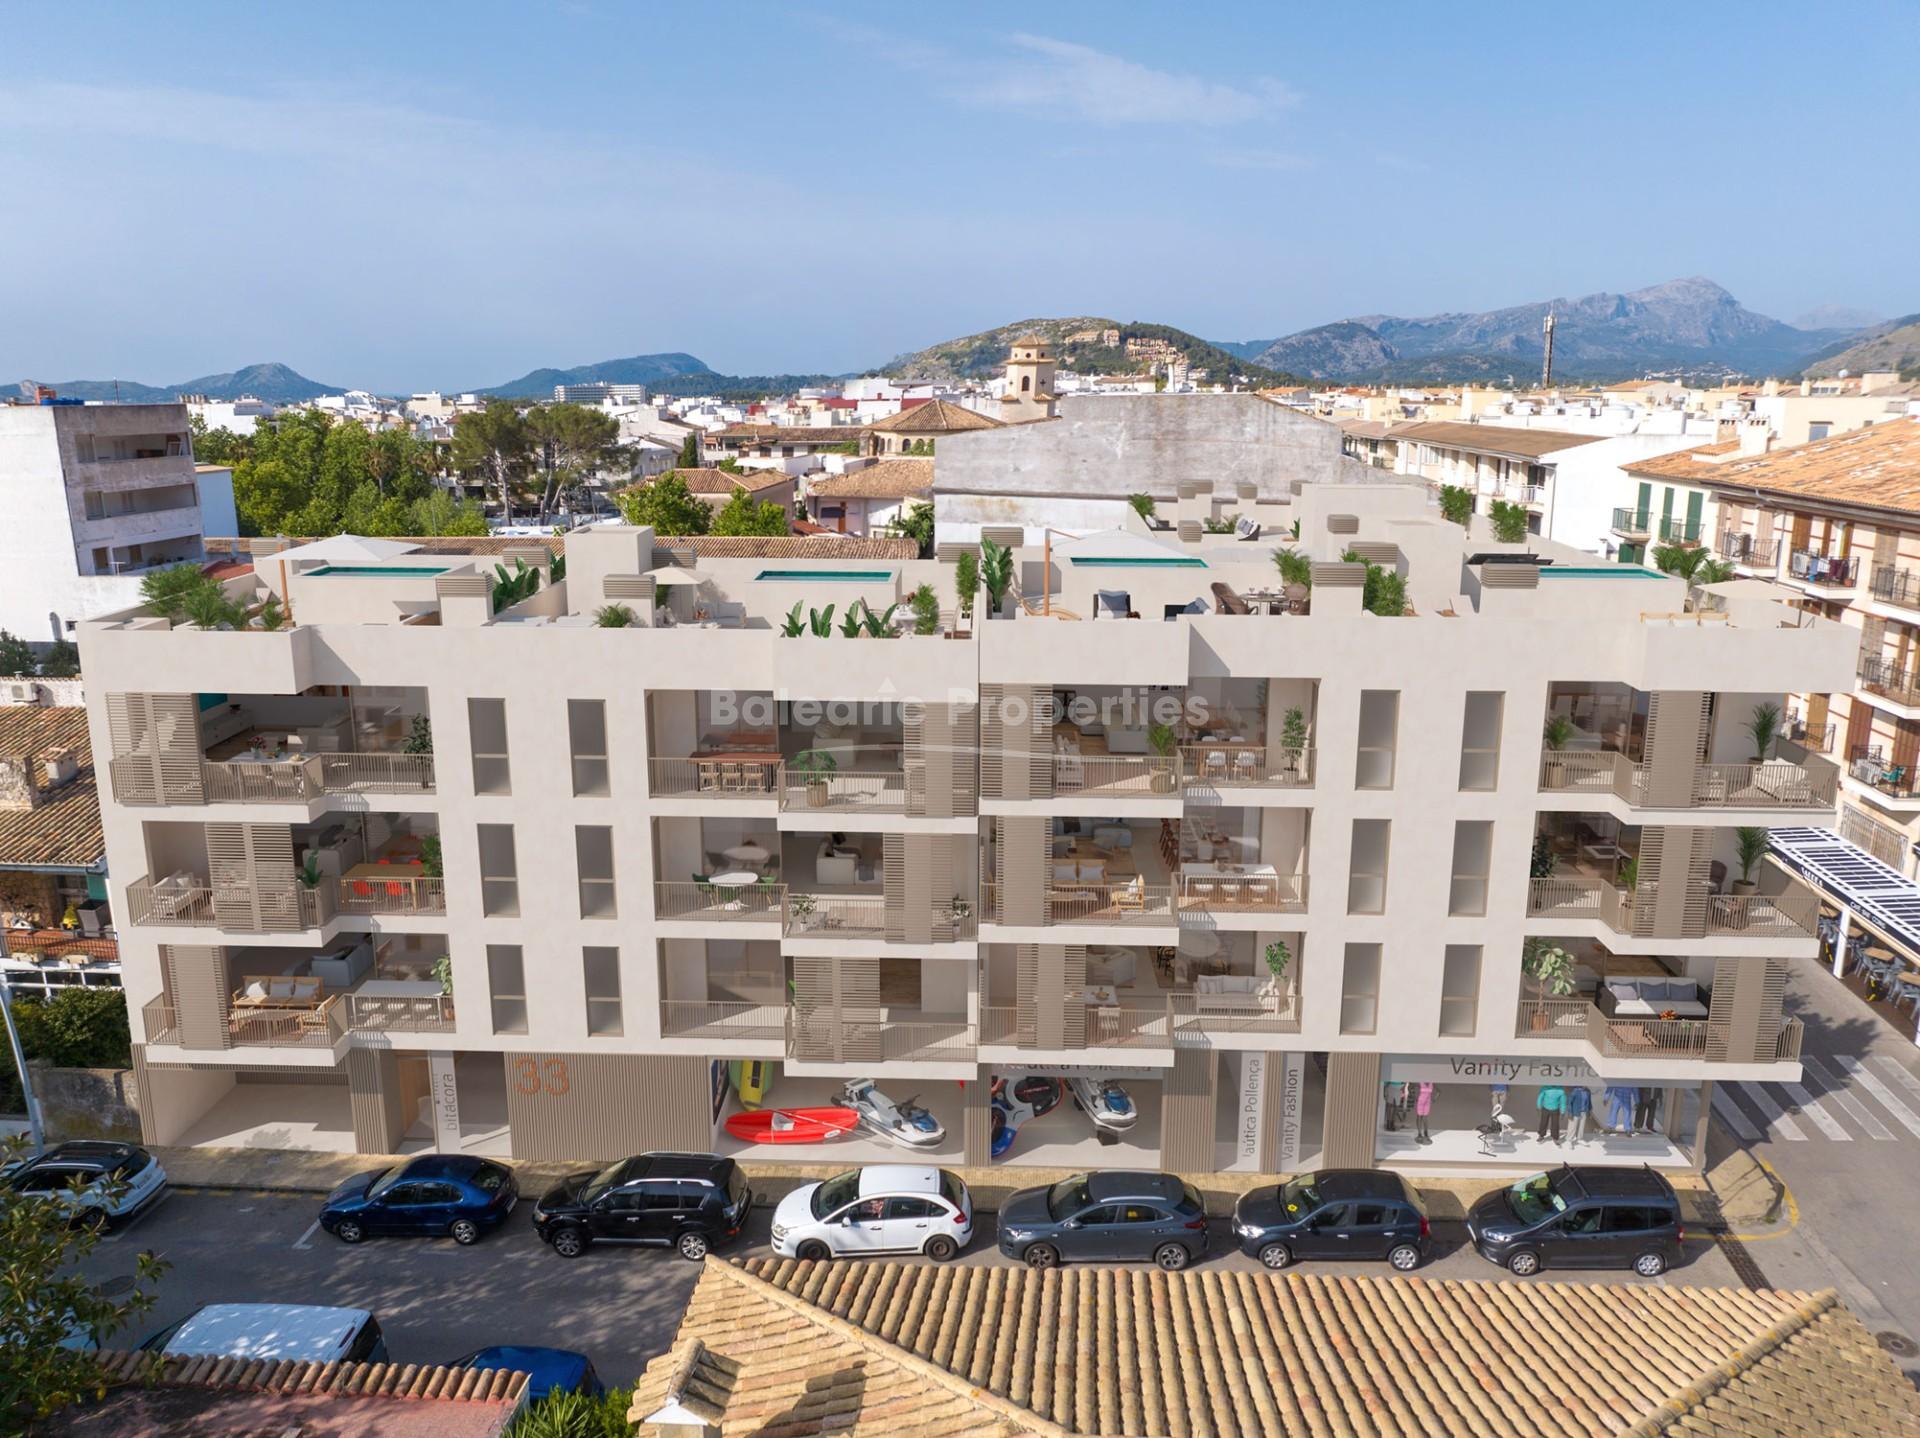 New apartment development for sale near the beach in Puerto Pollensa, Mallorca